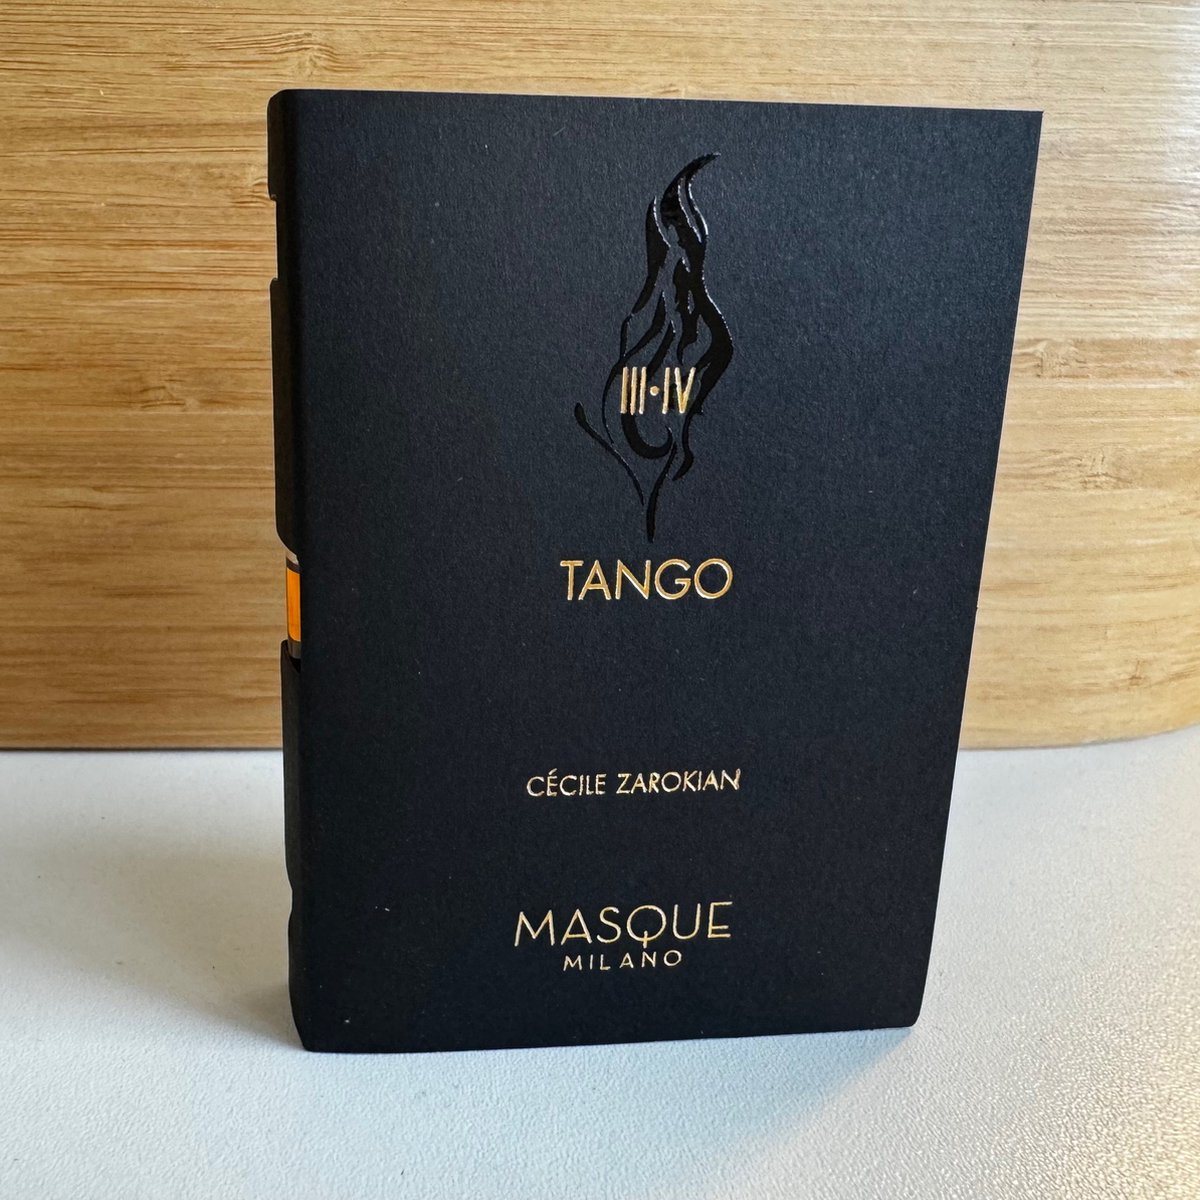 Masque Milano - Tango - 2ml Original Sample